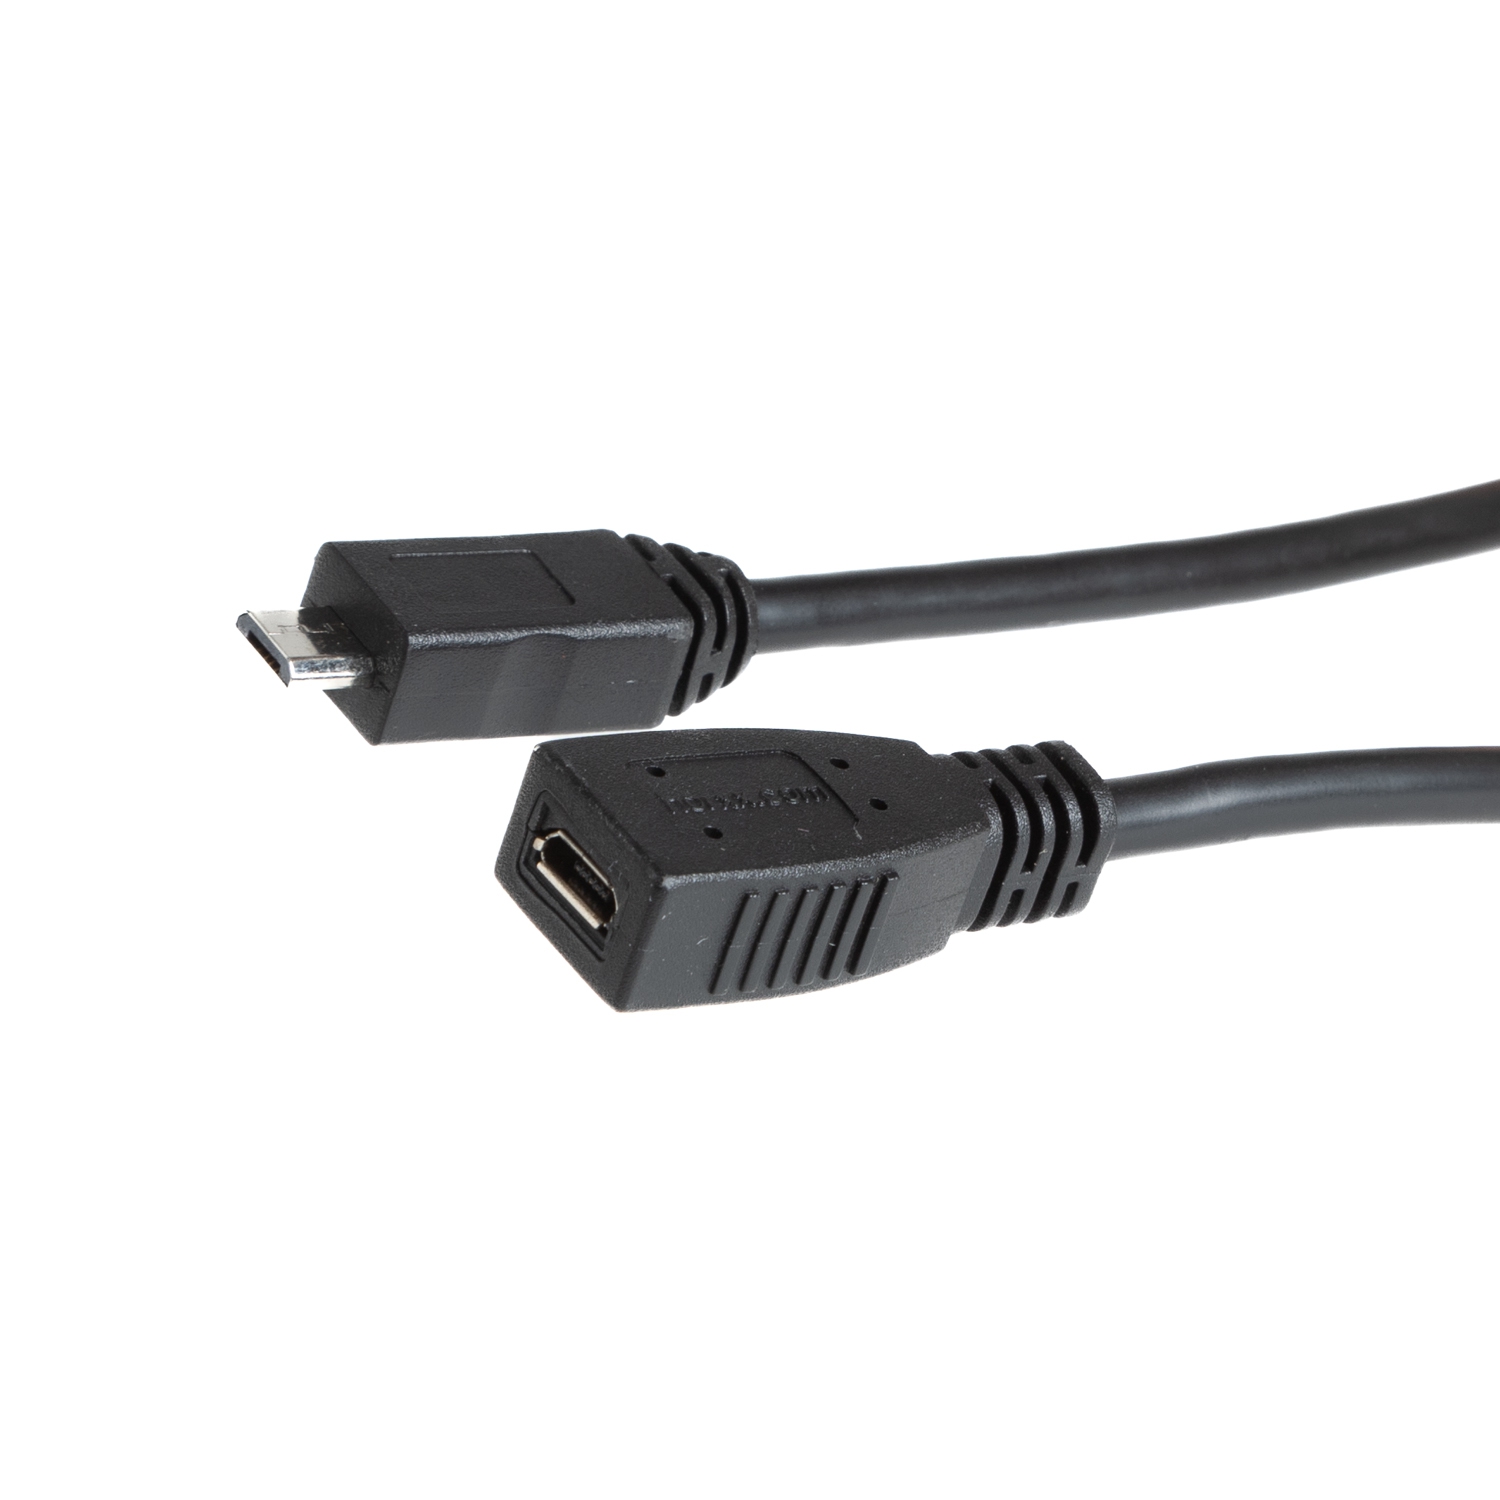 USB 2.0 MICRO B Verlängerung, alle 5 Pins 1-zu-1 verbunden, 50cm